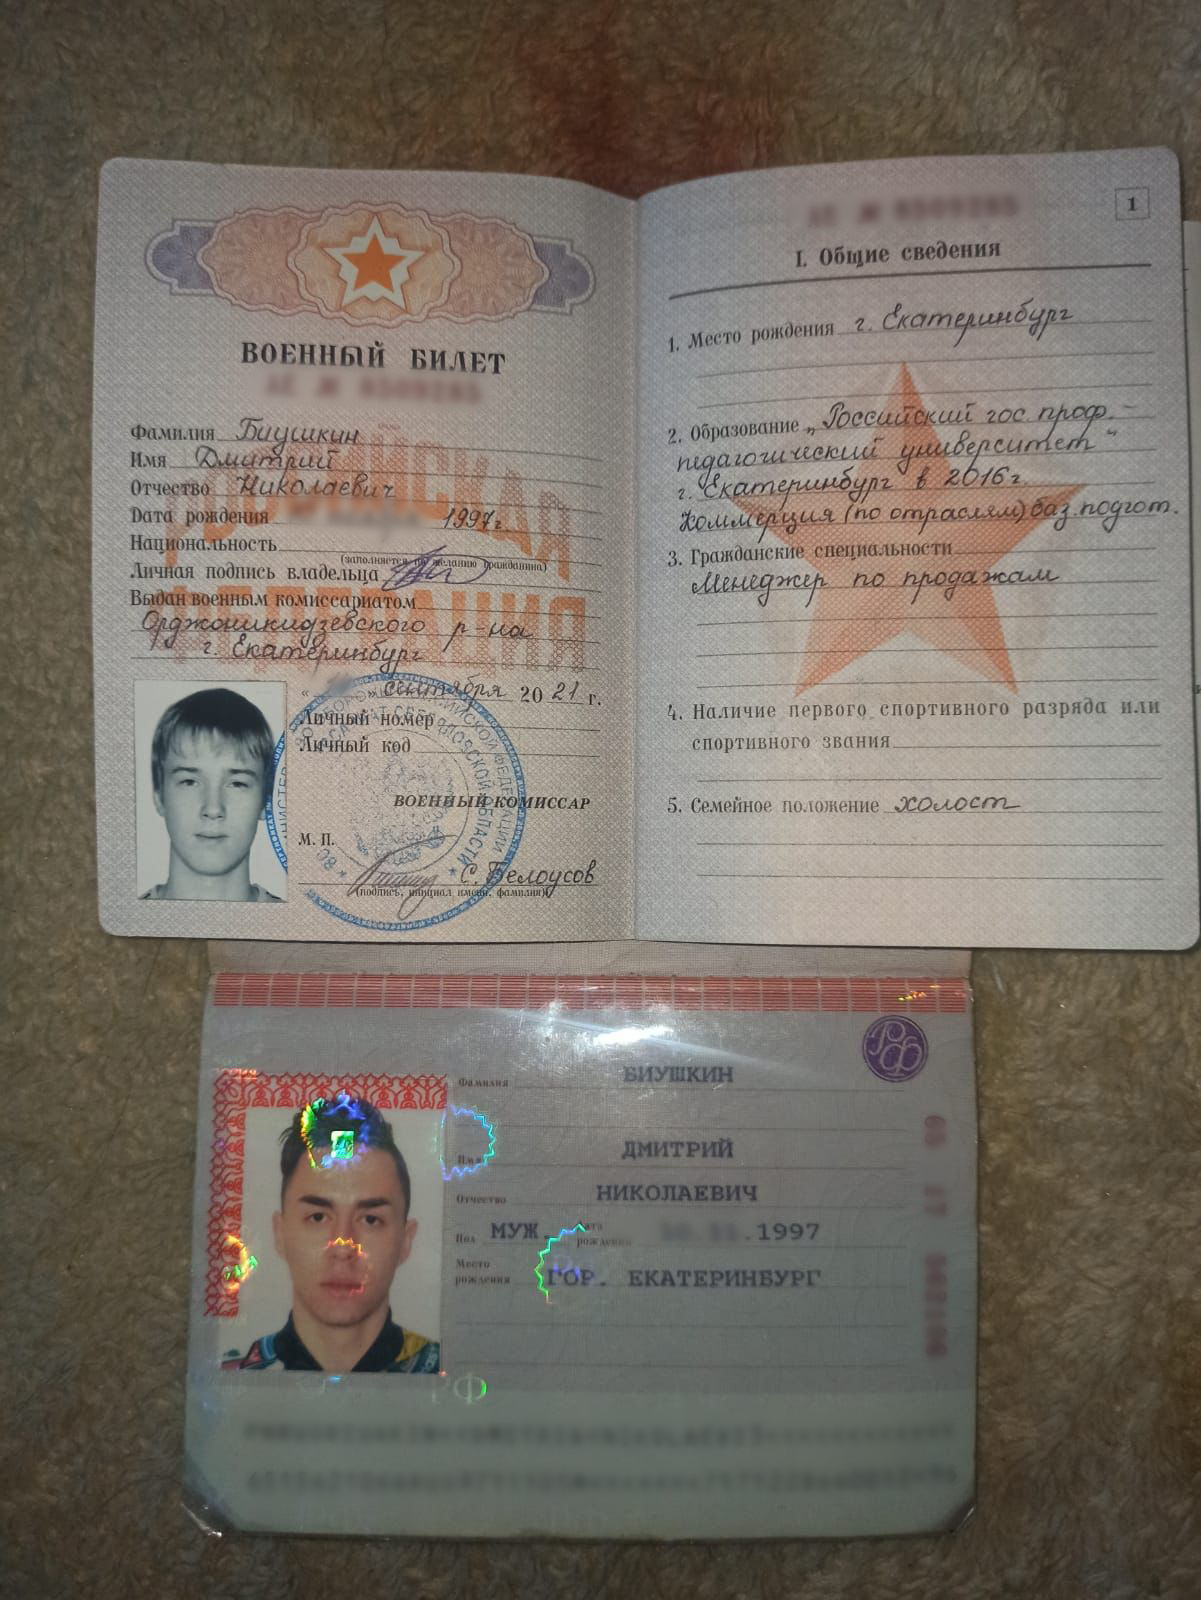 А вы как думаете, на паспорте и в военном билете фото одного человека?